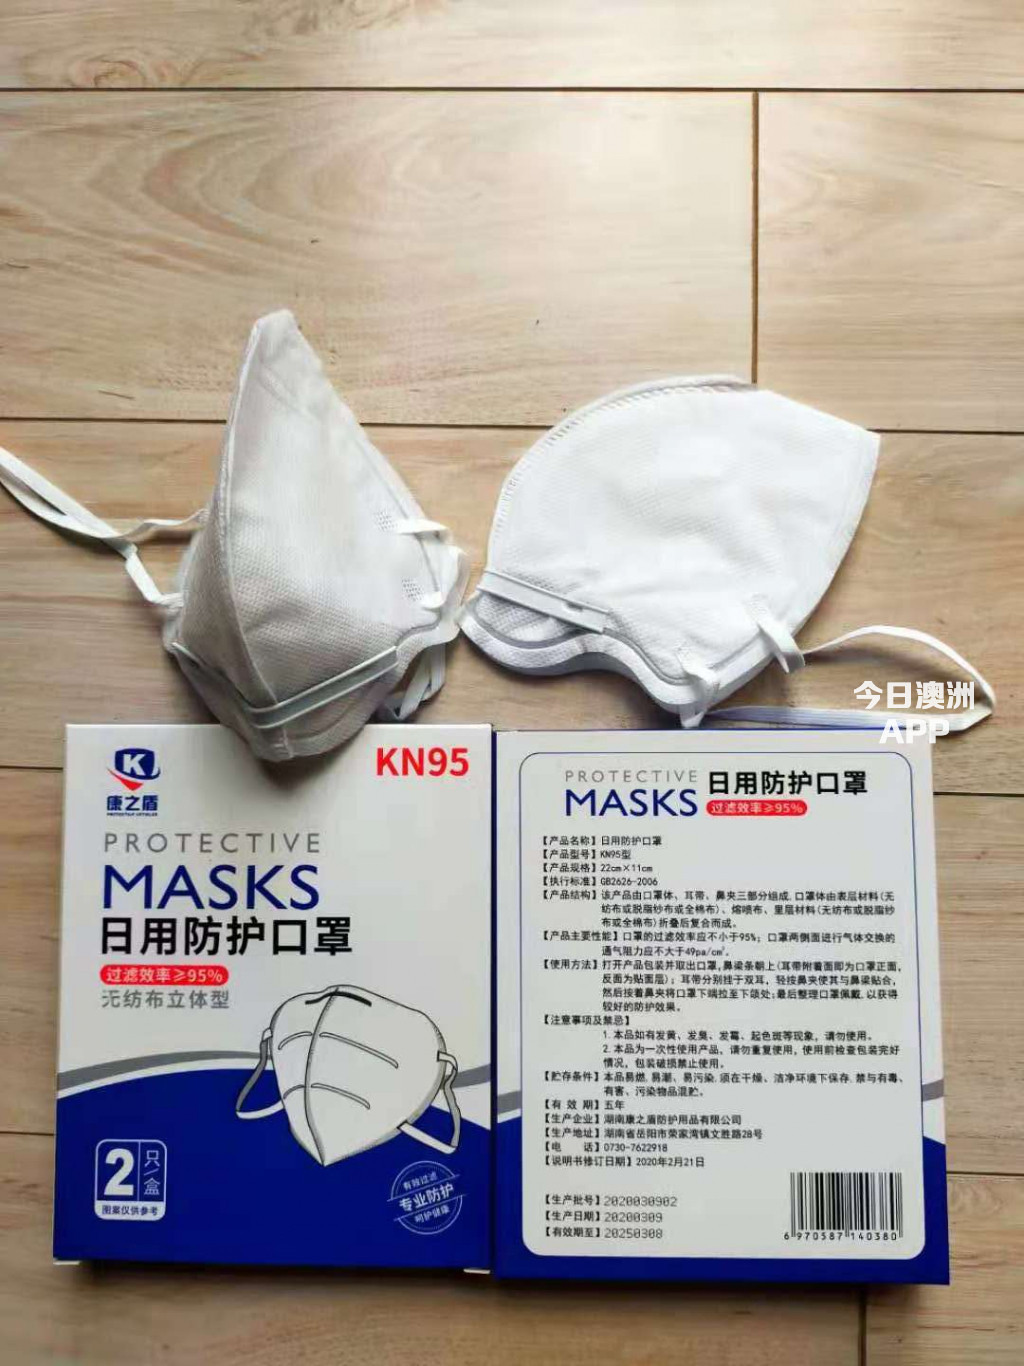  预防病毒传播最有效KN95口罩批发和零售